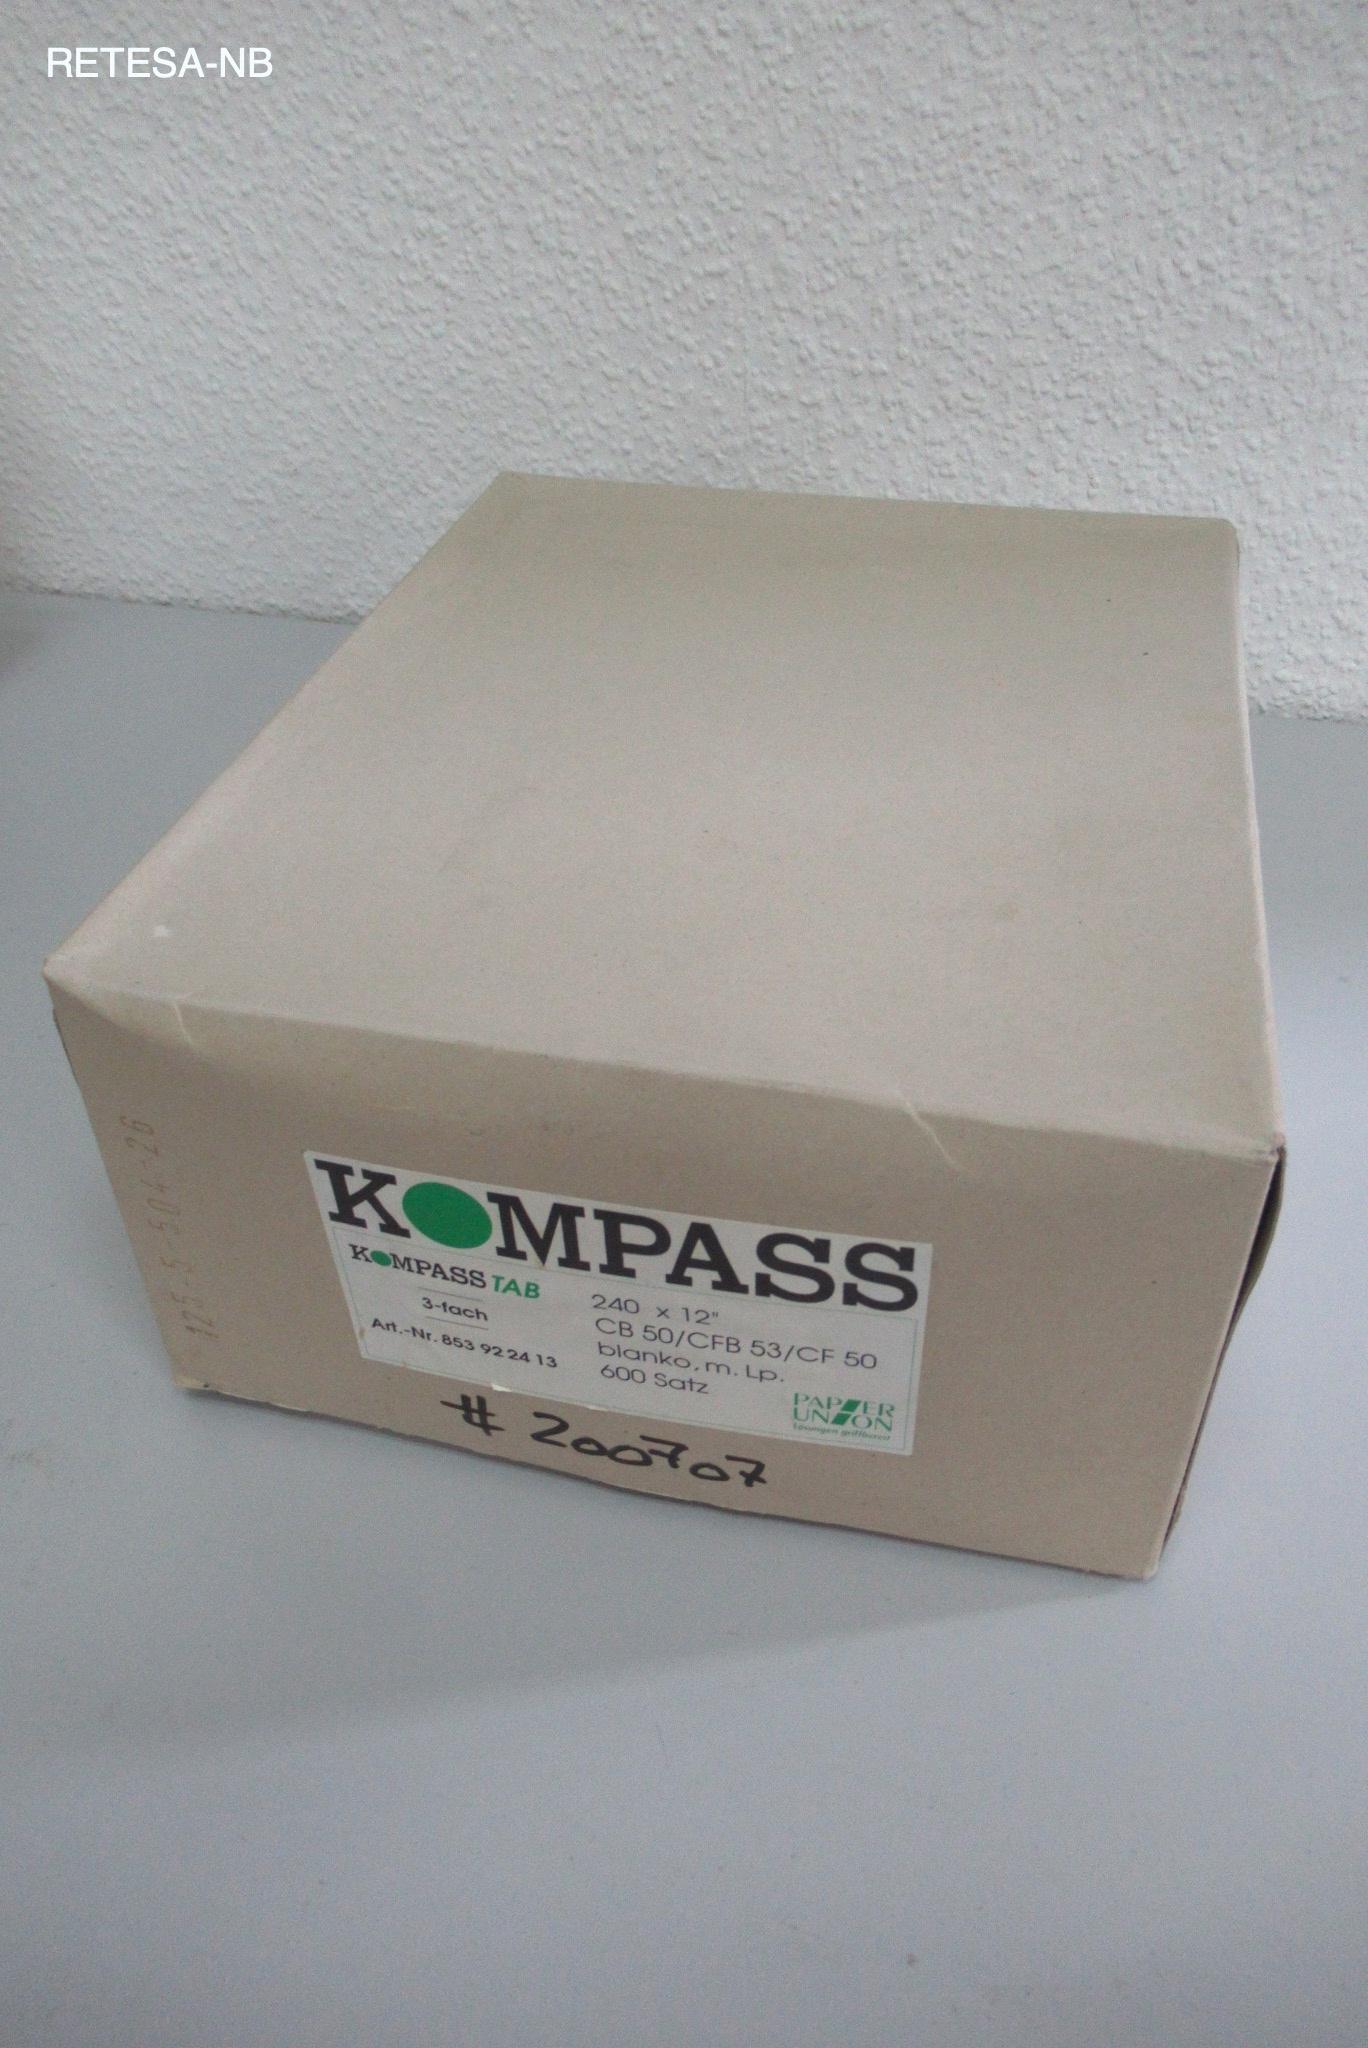 Endlospapier 240mm*12" 70g weiß (600 Blatt) Kompass